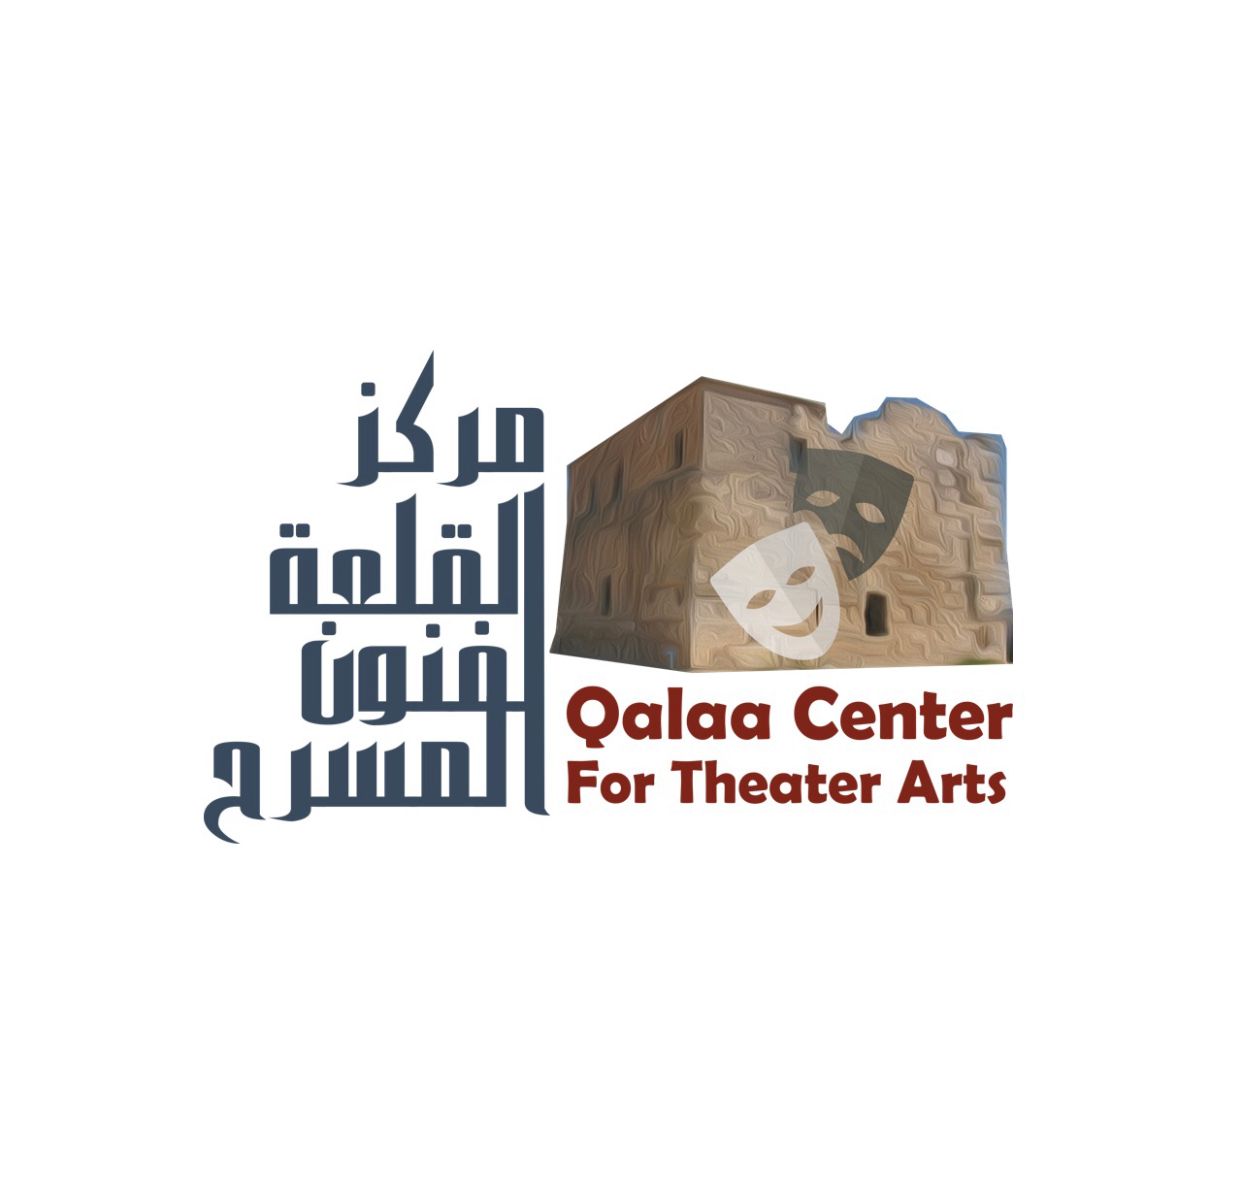 Qalaa Center